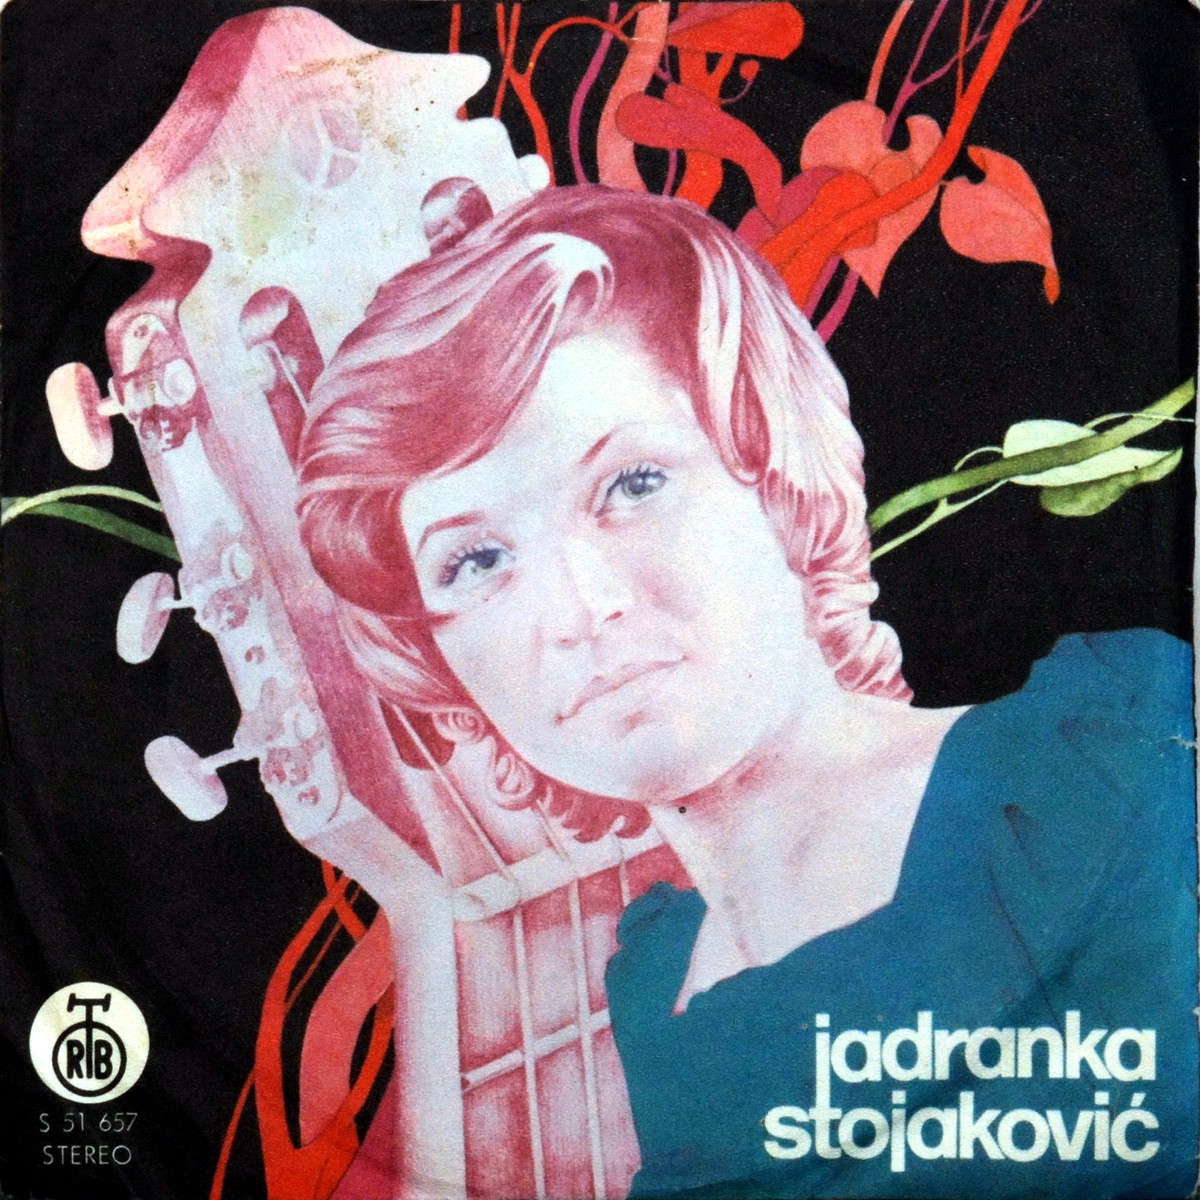 Jadranka Stojakovic 1974 Muzika je svirala a